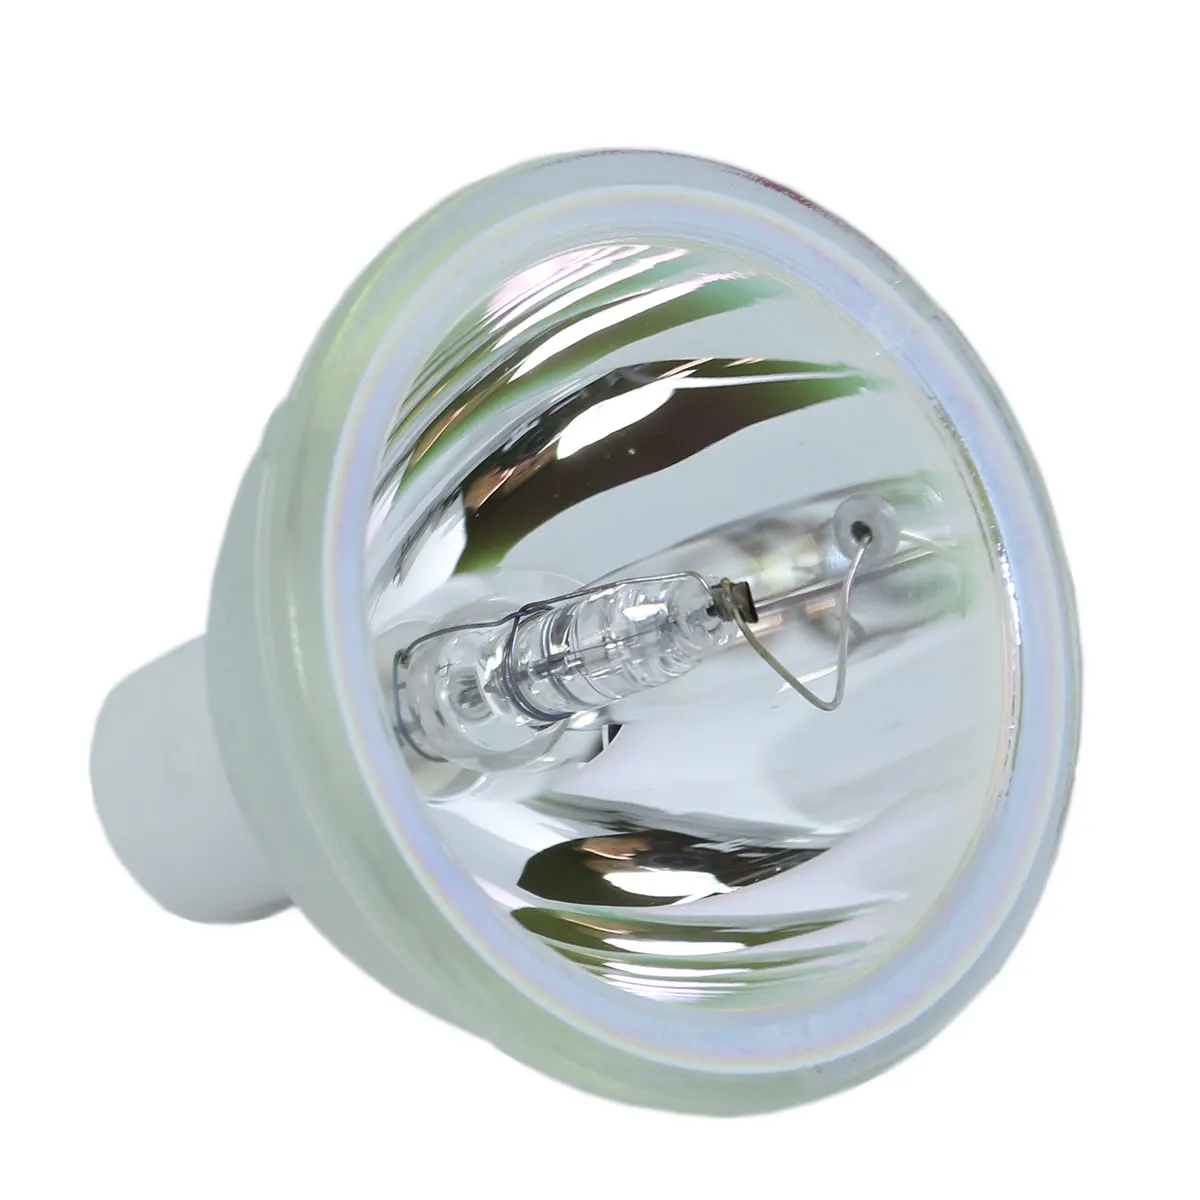 Совместимость голая лампочка SHP58 SP-LAMP-018 SPLAMP018 Защитная пленка для InFocus C130 C110 X2 X3 проектор лампа накаливания без корпуса